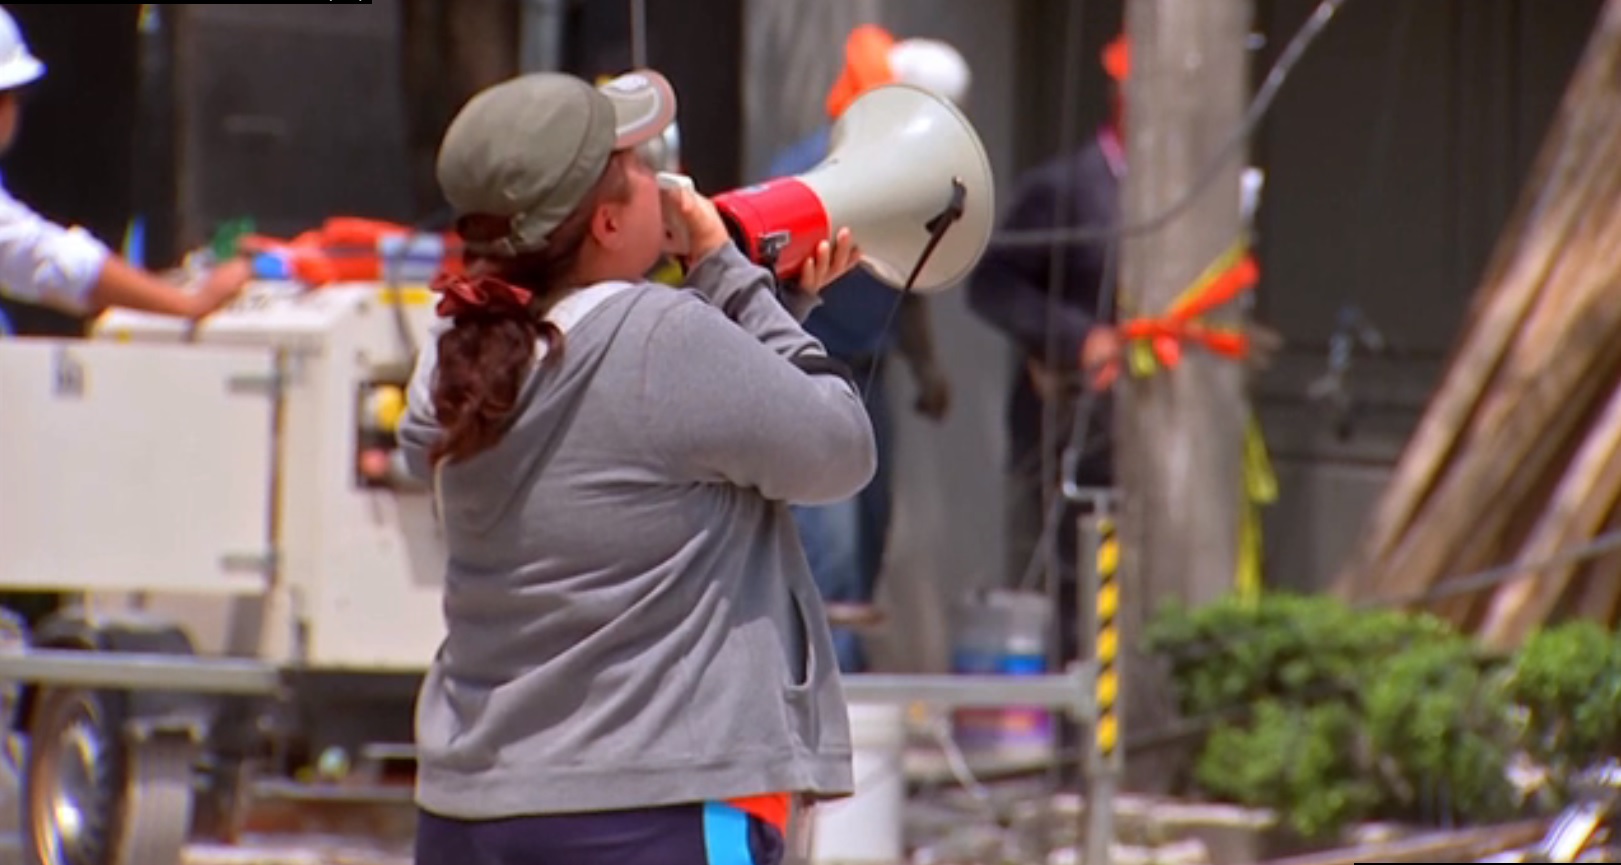 Mujer usa megáfono para hablar con hermano sepultado tras sismo CDMX